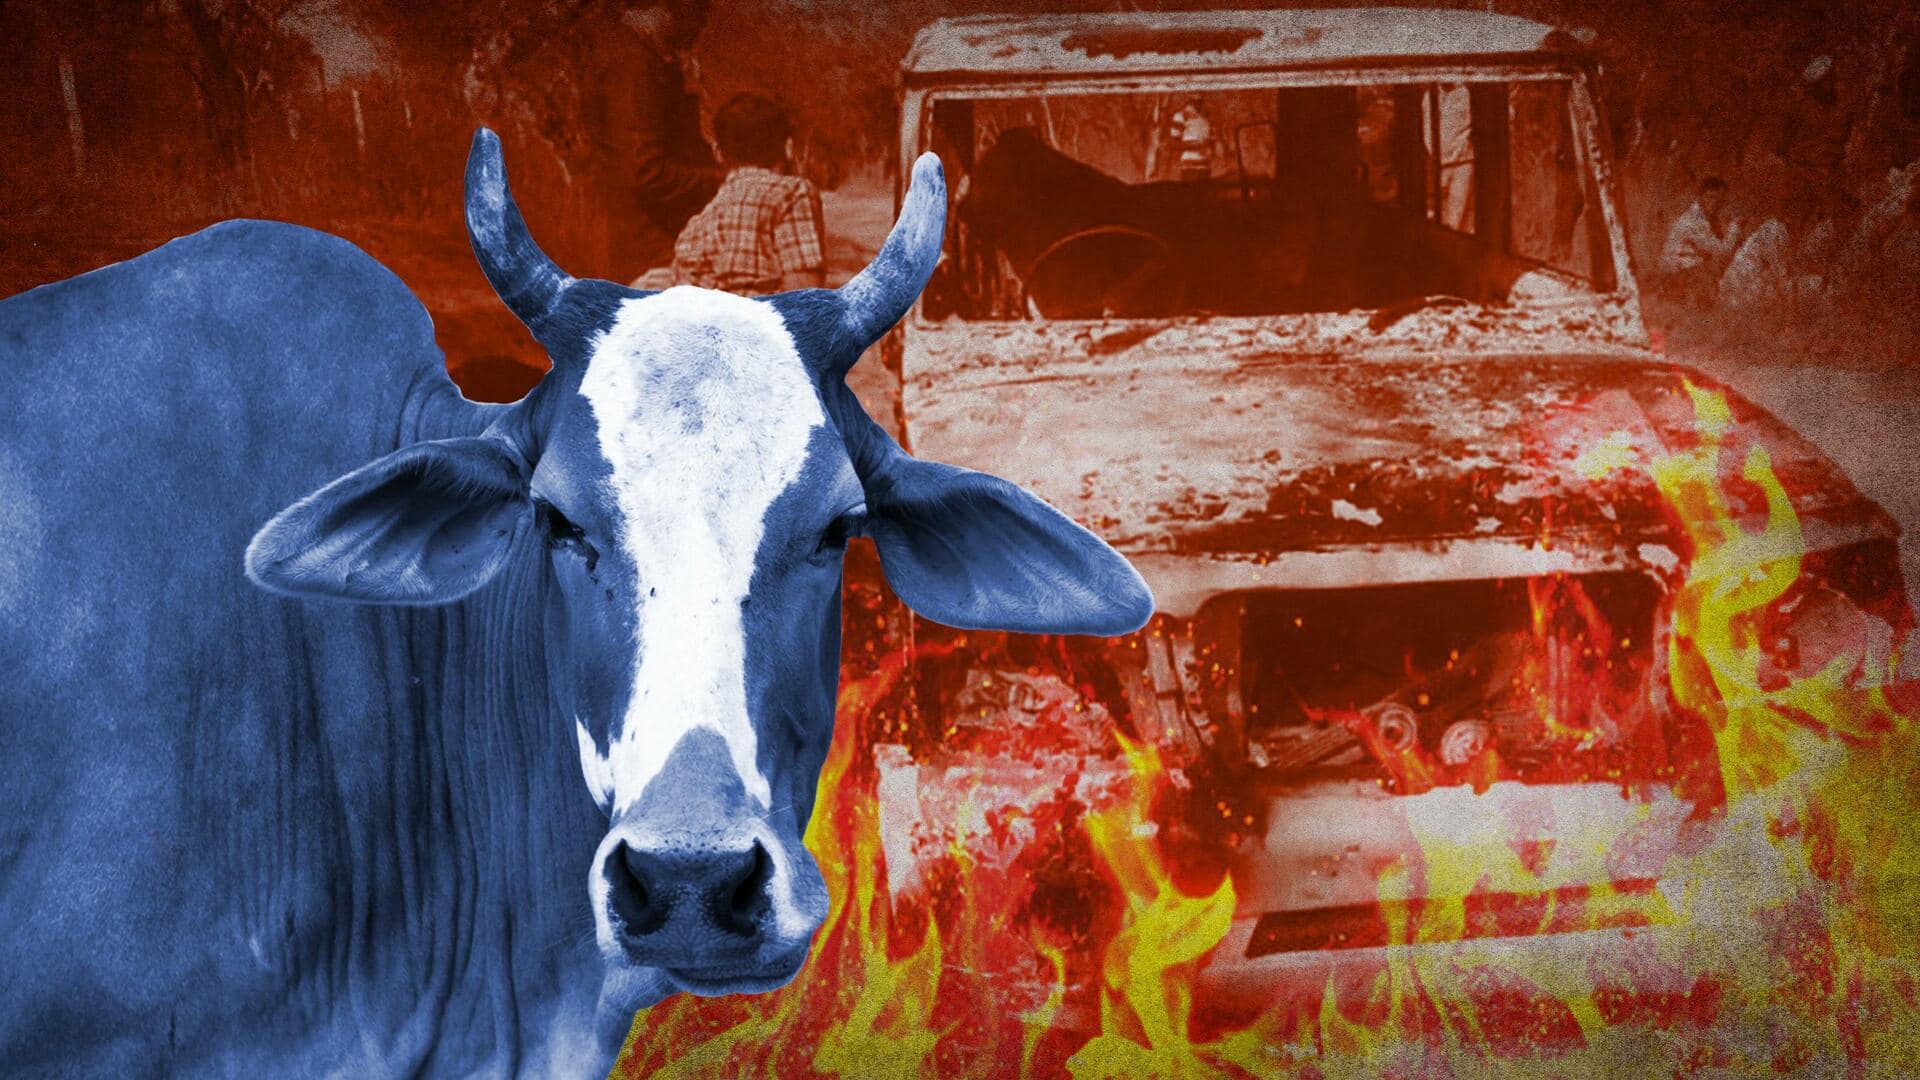 भिवानी: बोलेरो में जले हुए नर कंकाल मिलने के मामले में आया बजरंग दल का नाम